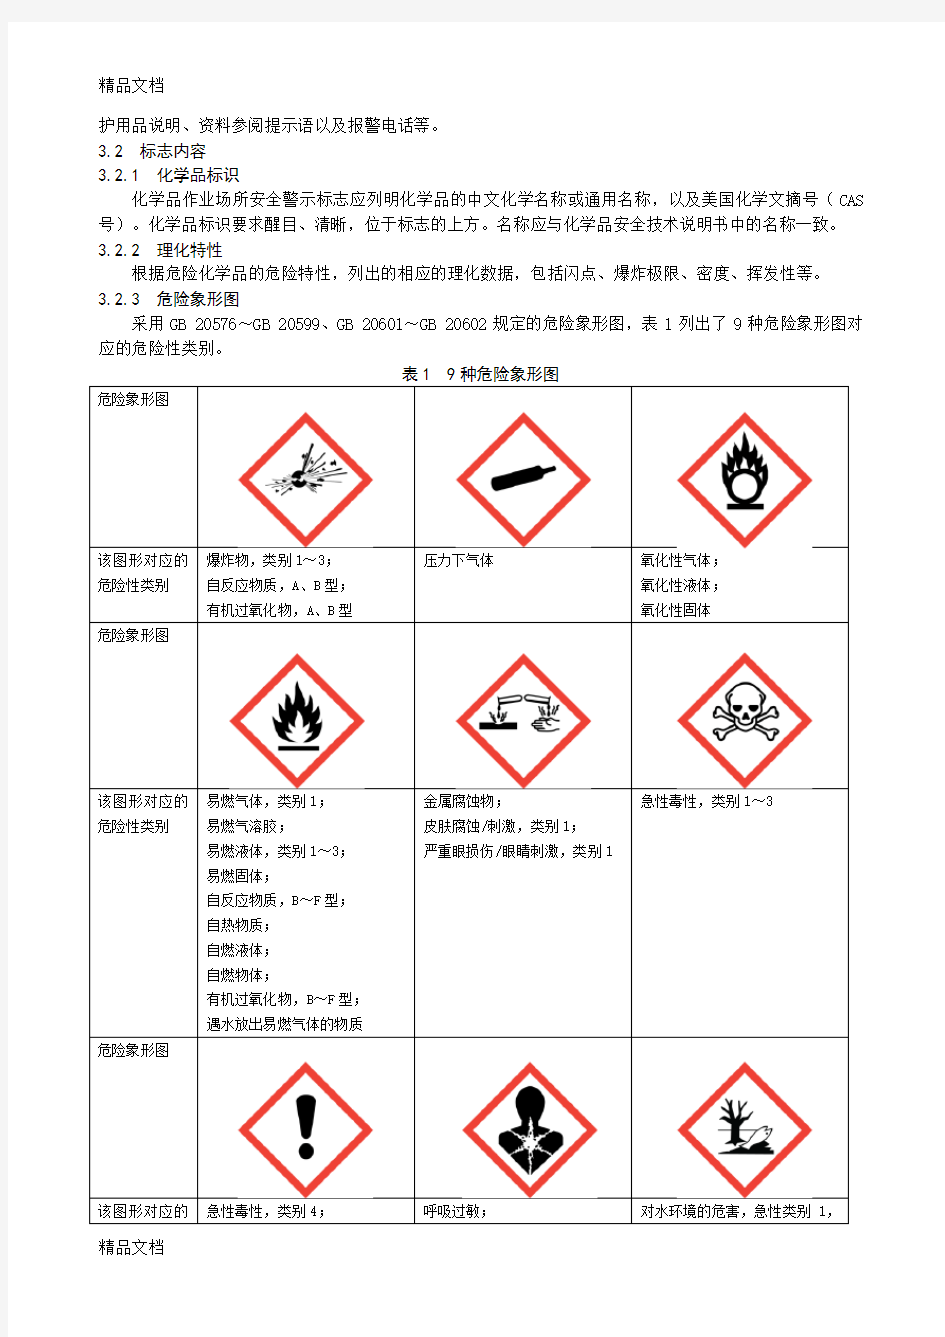 最新化学品作业场所安全警示标志规范(AQ-3047—)